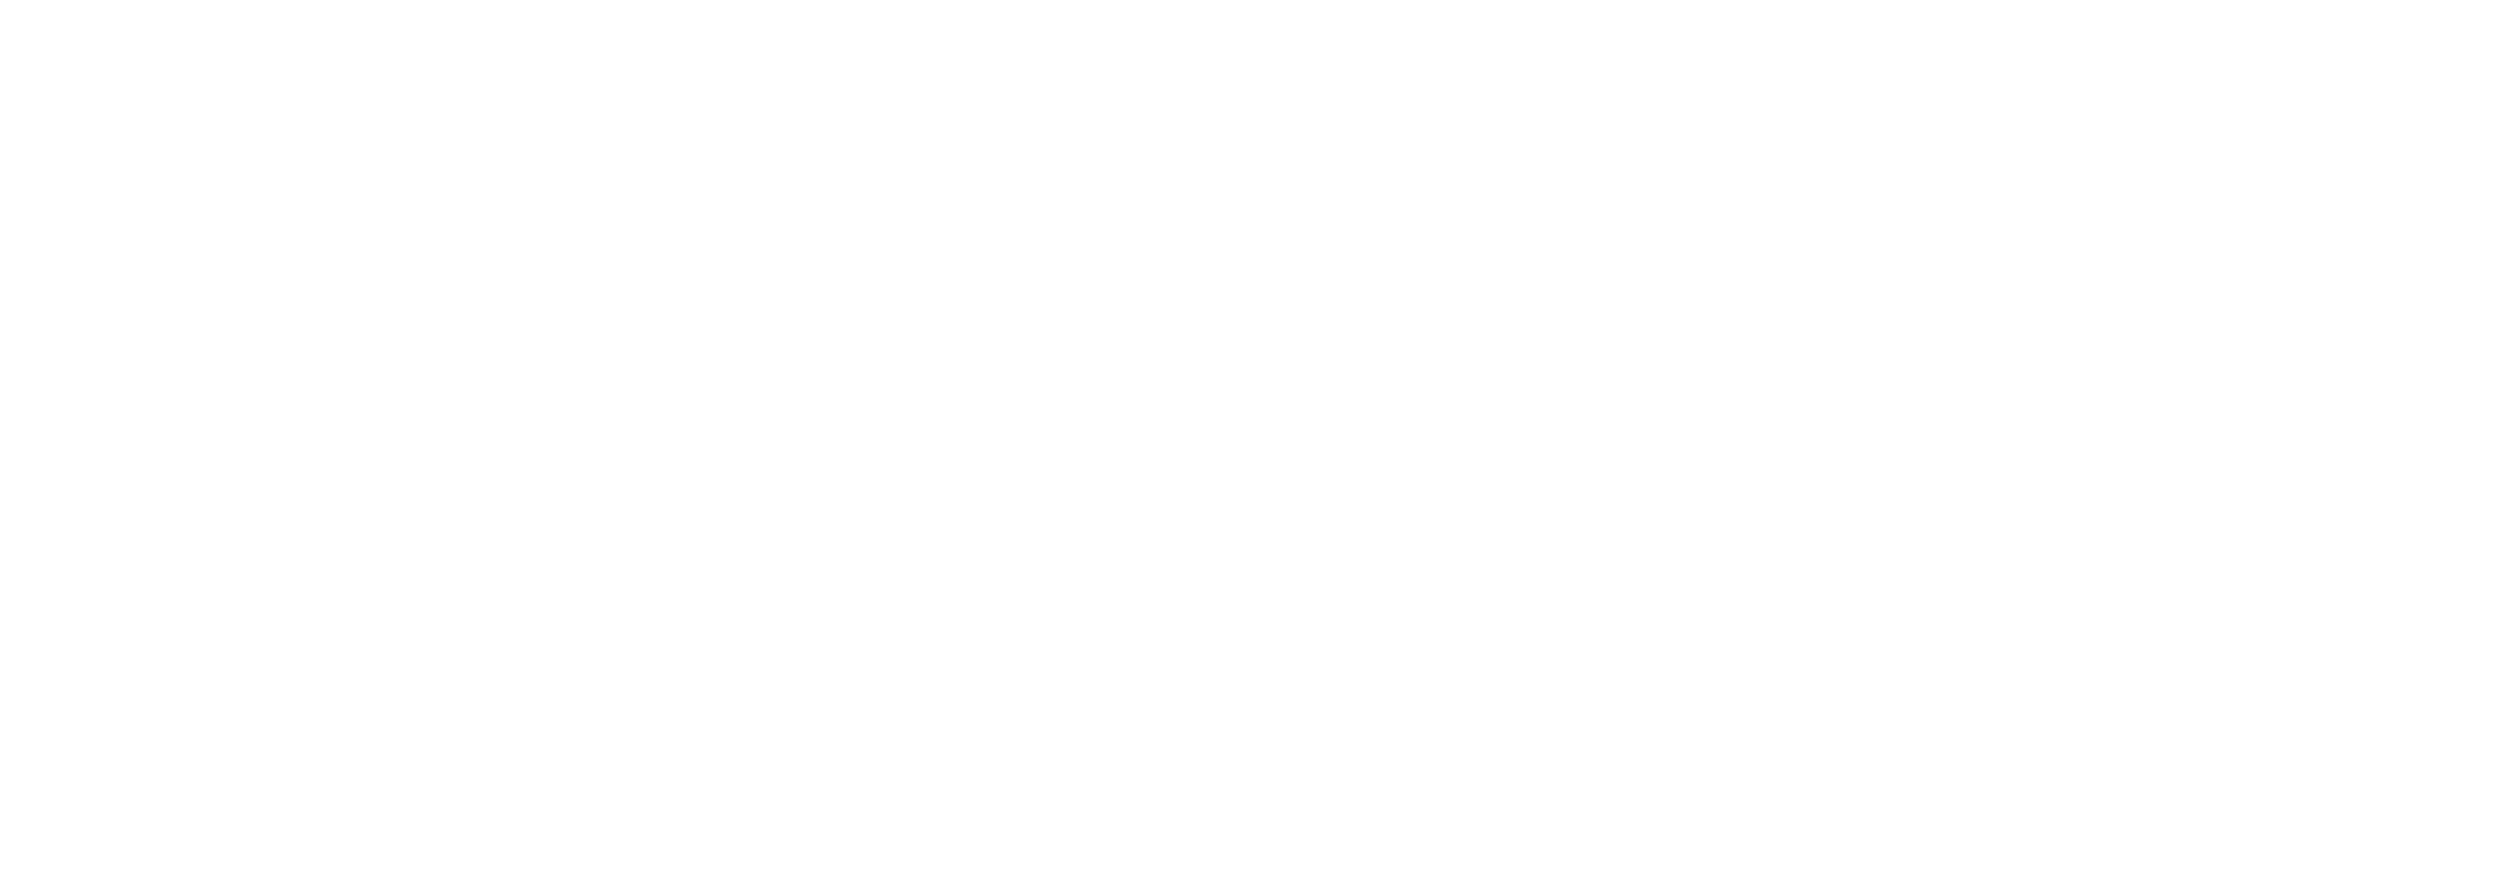 Nestlé_Skin_Health.png